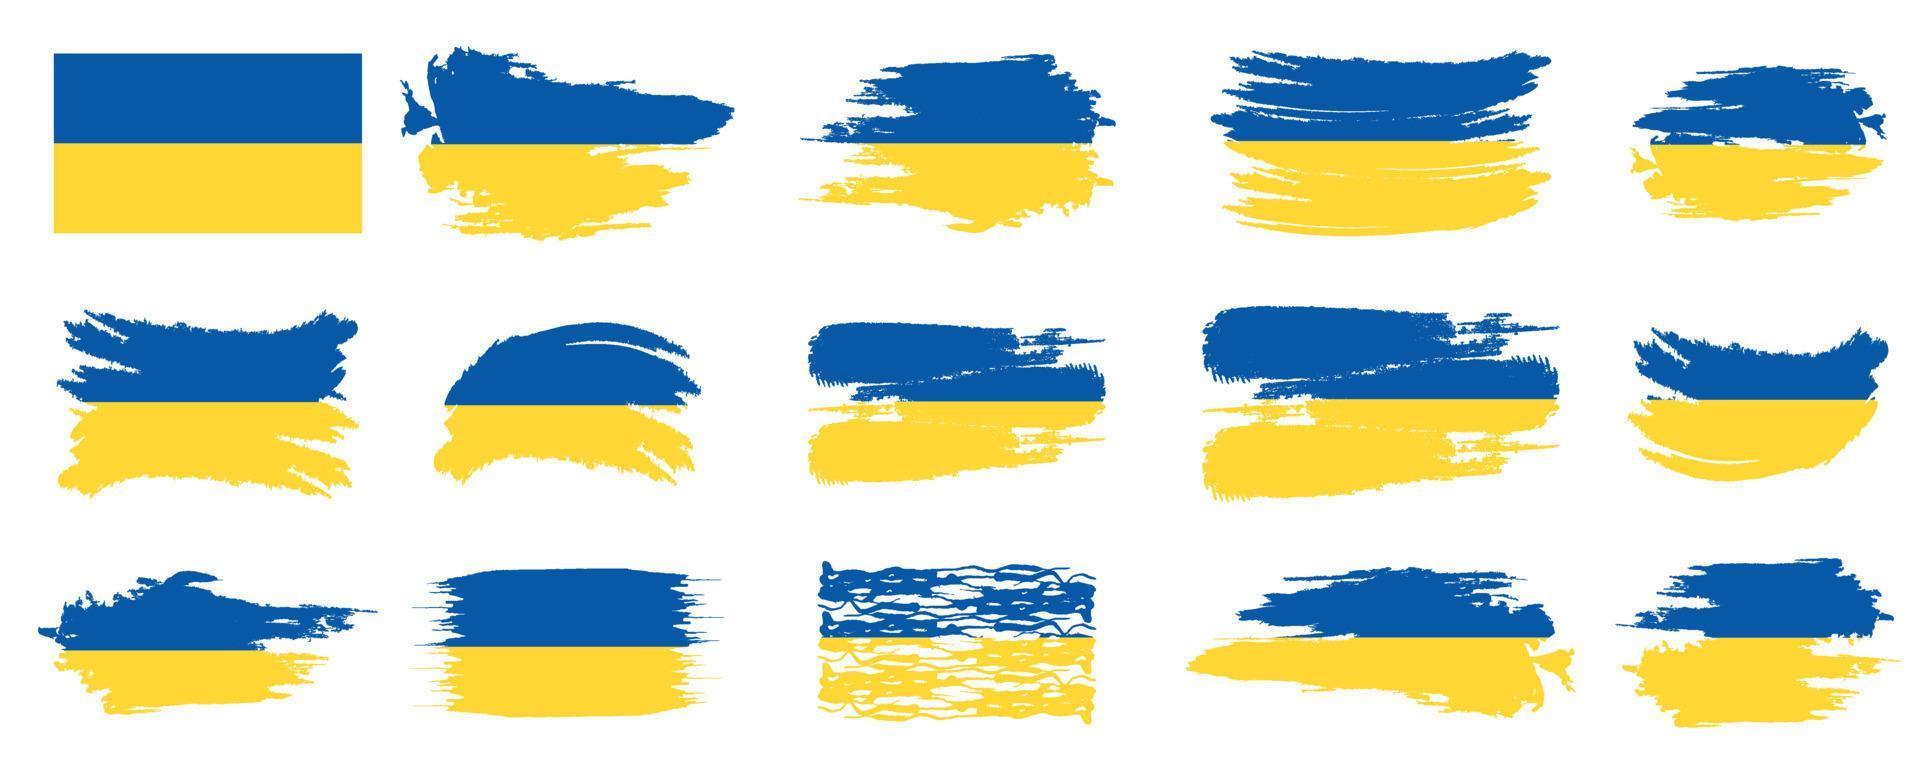 ukraine-flaggenbürstendesign. ukraine nationalflagge pinselstrich effekt auf weißem hintergrund vektor design set. ukraine flaggenvektorillustration